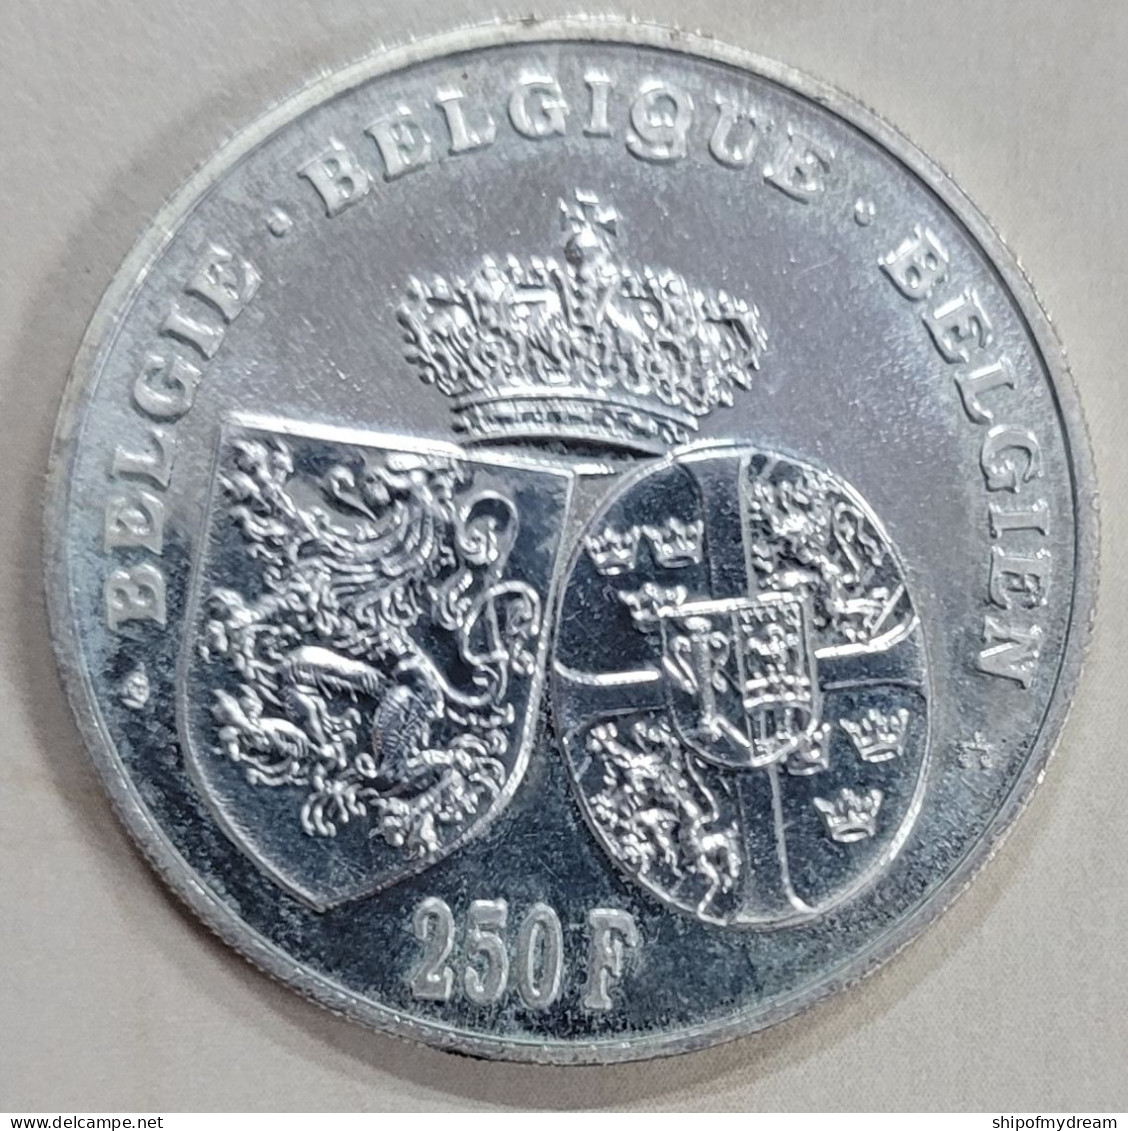 Belgium Silver 250 Franc 1995. KM-199. Death Of Queen Astrid - 250 Francs